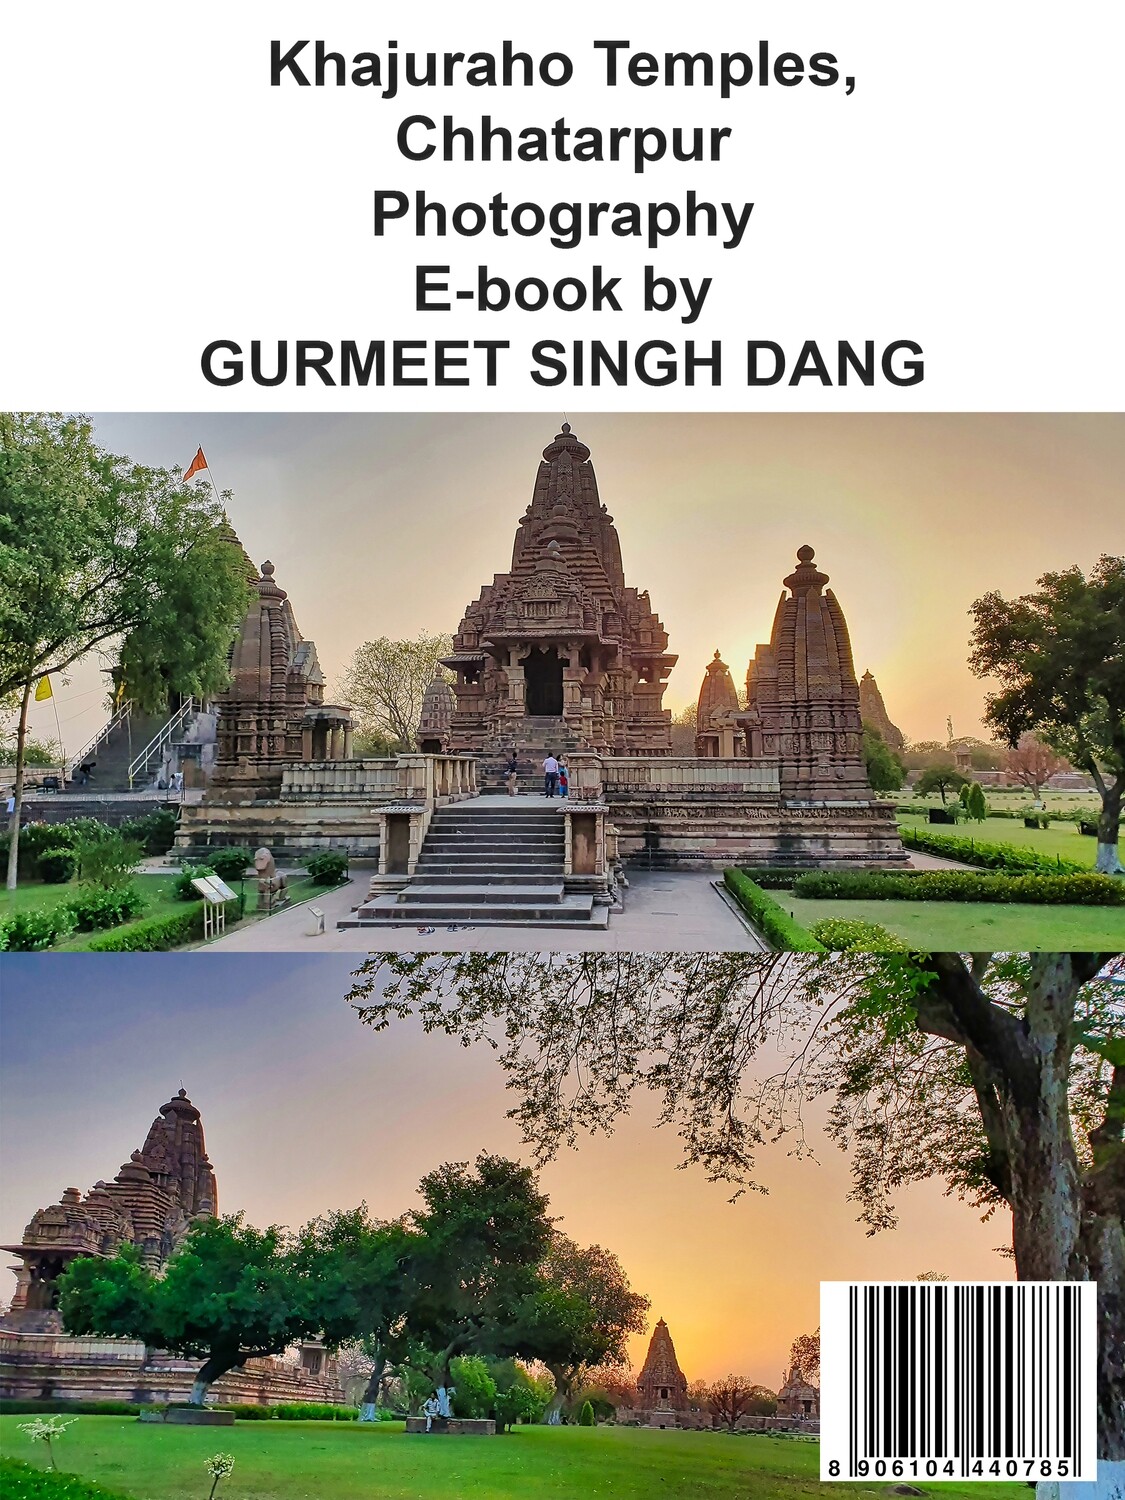 Khajuraho Temples, Chhatarpur Photography E-book by GURMEET SINGH DANG